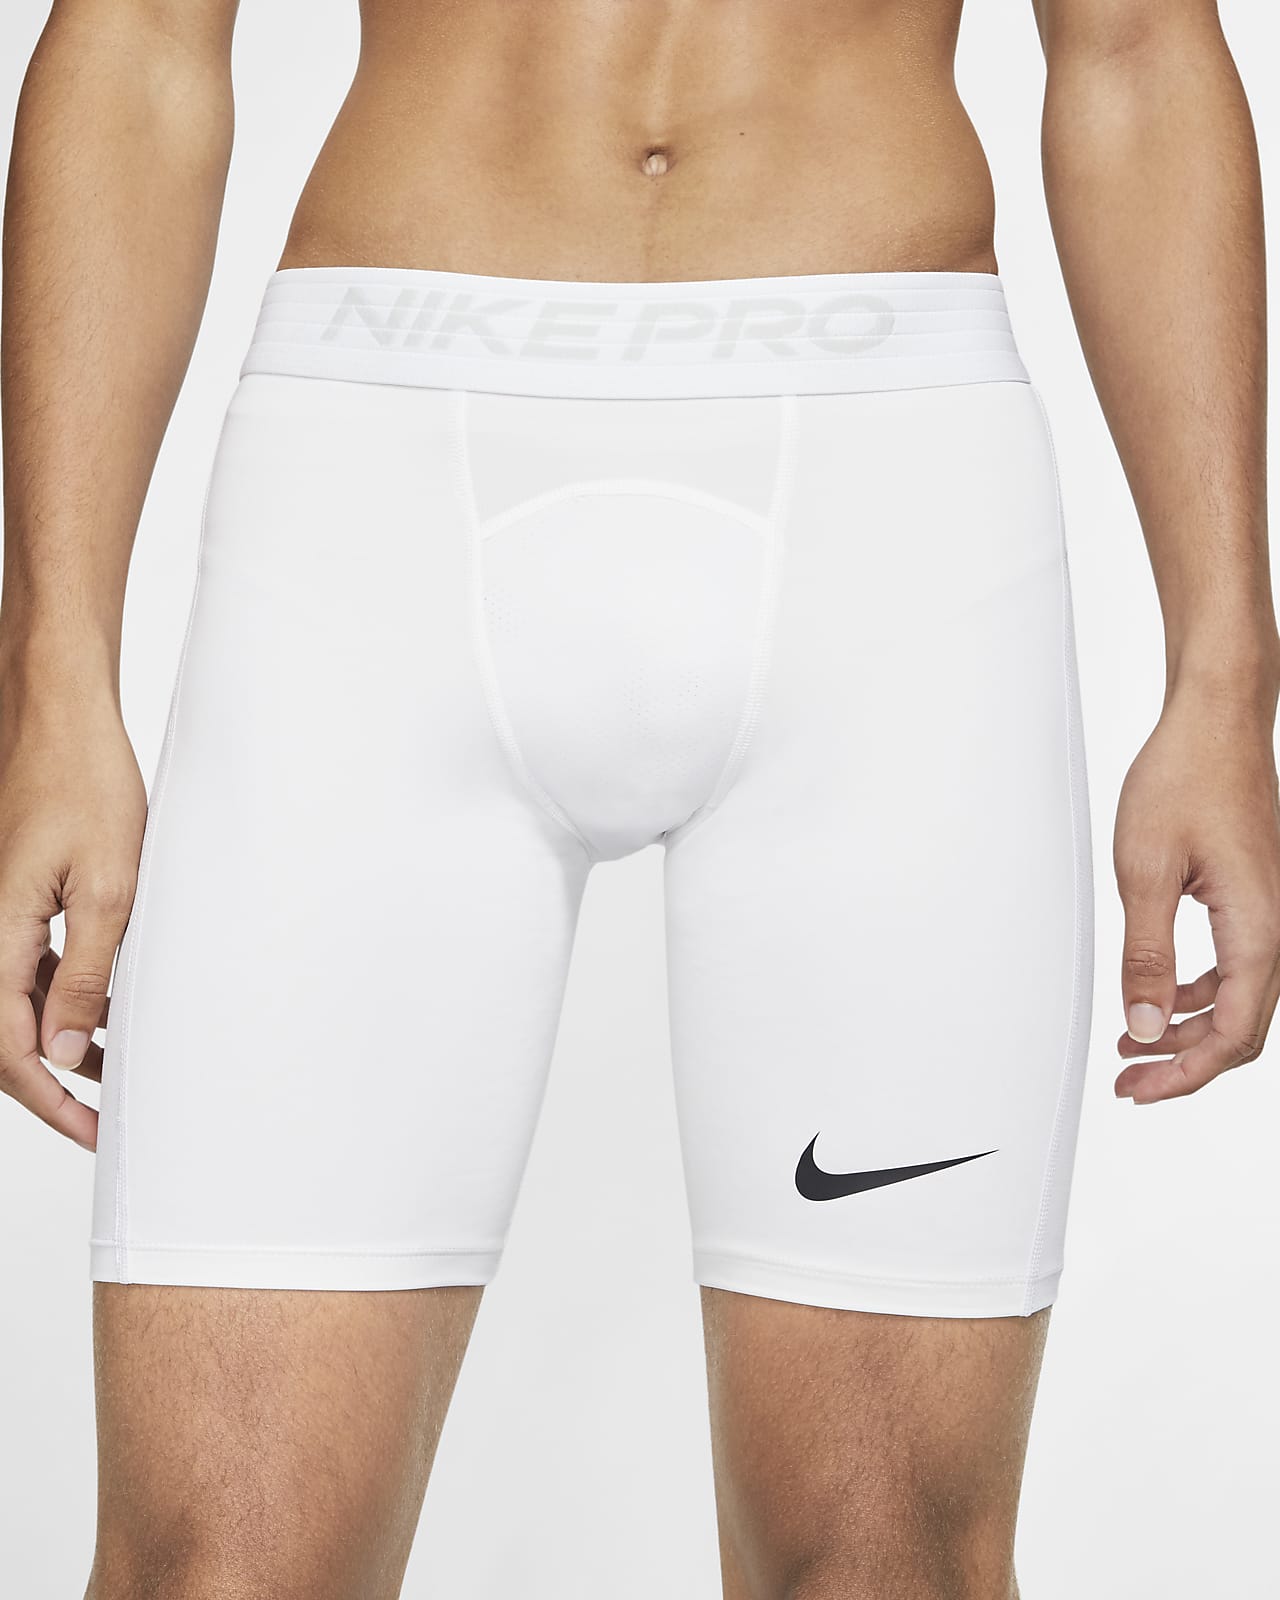 Nike Pro Men's Shorts. Nike LU